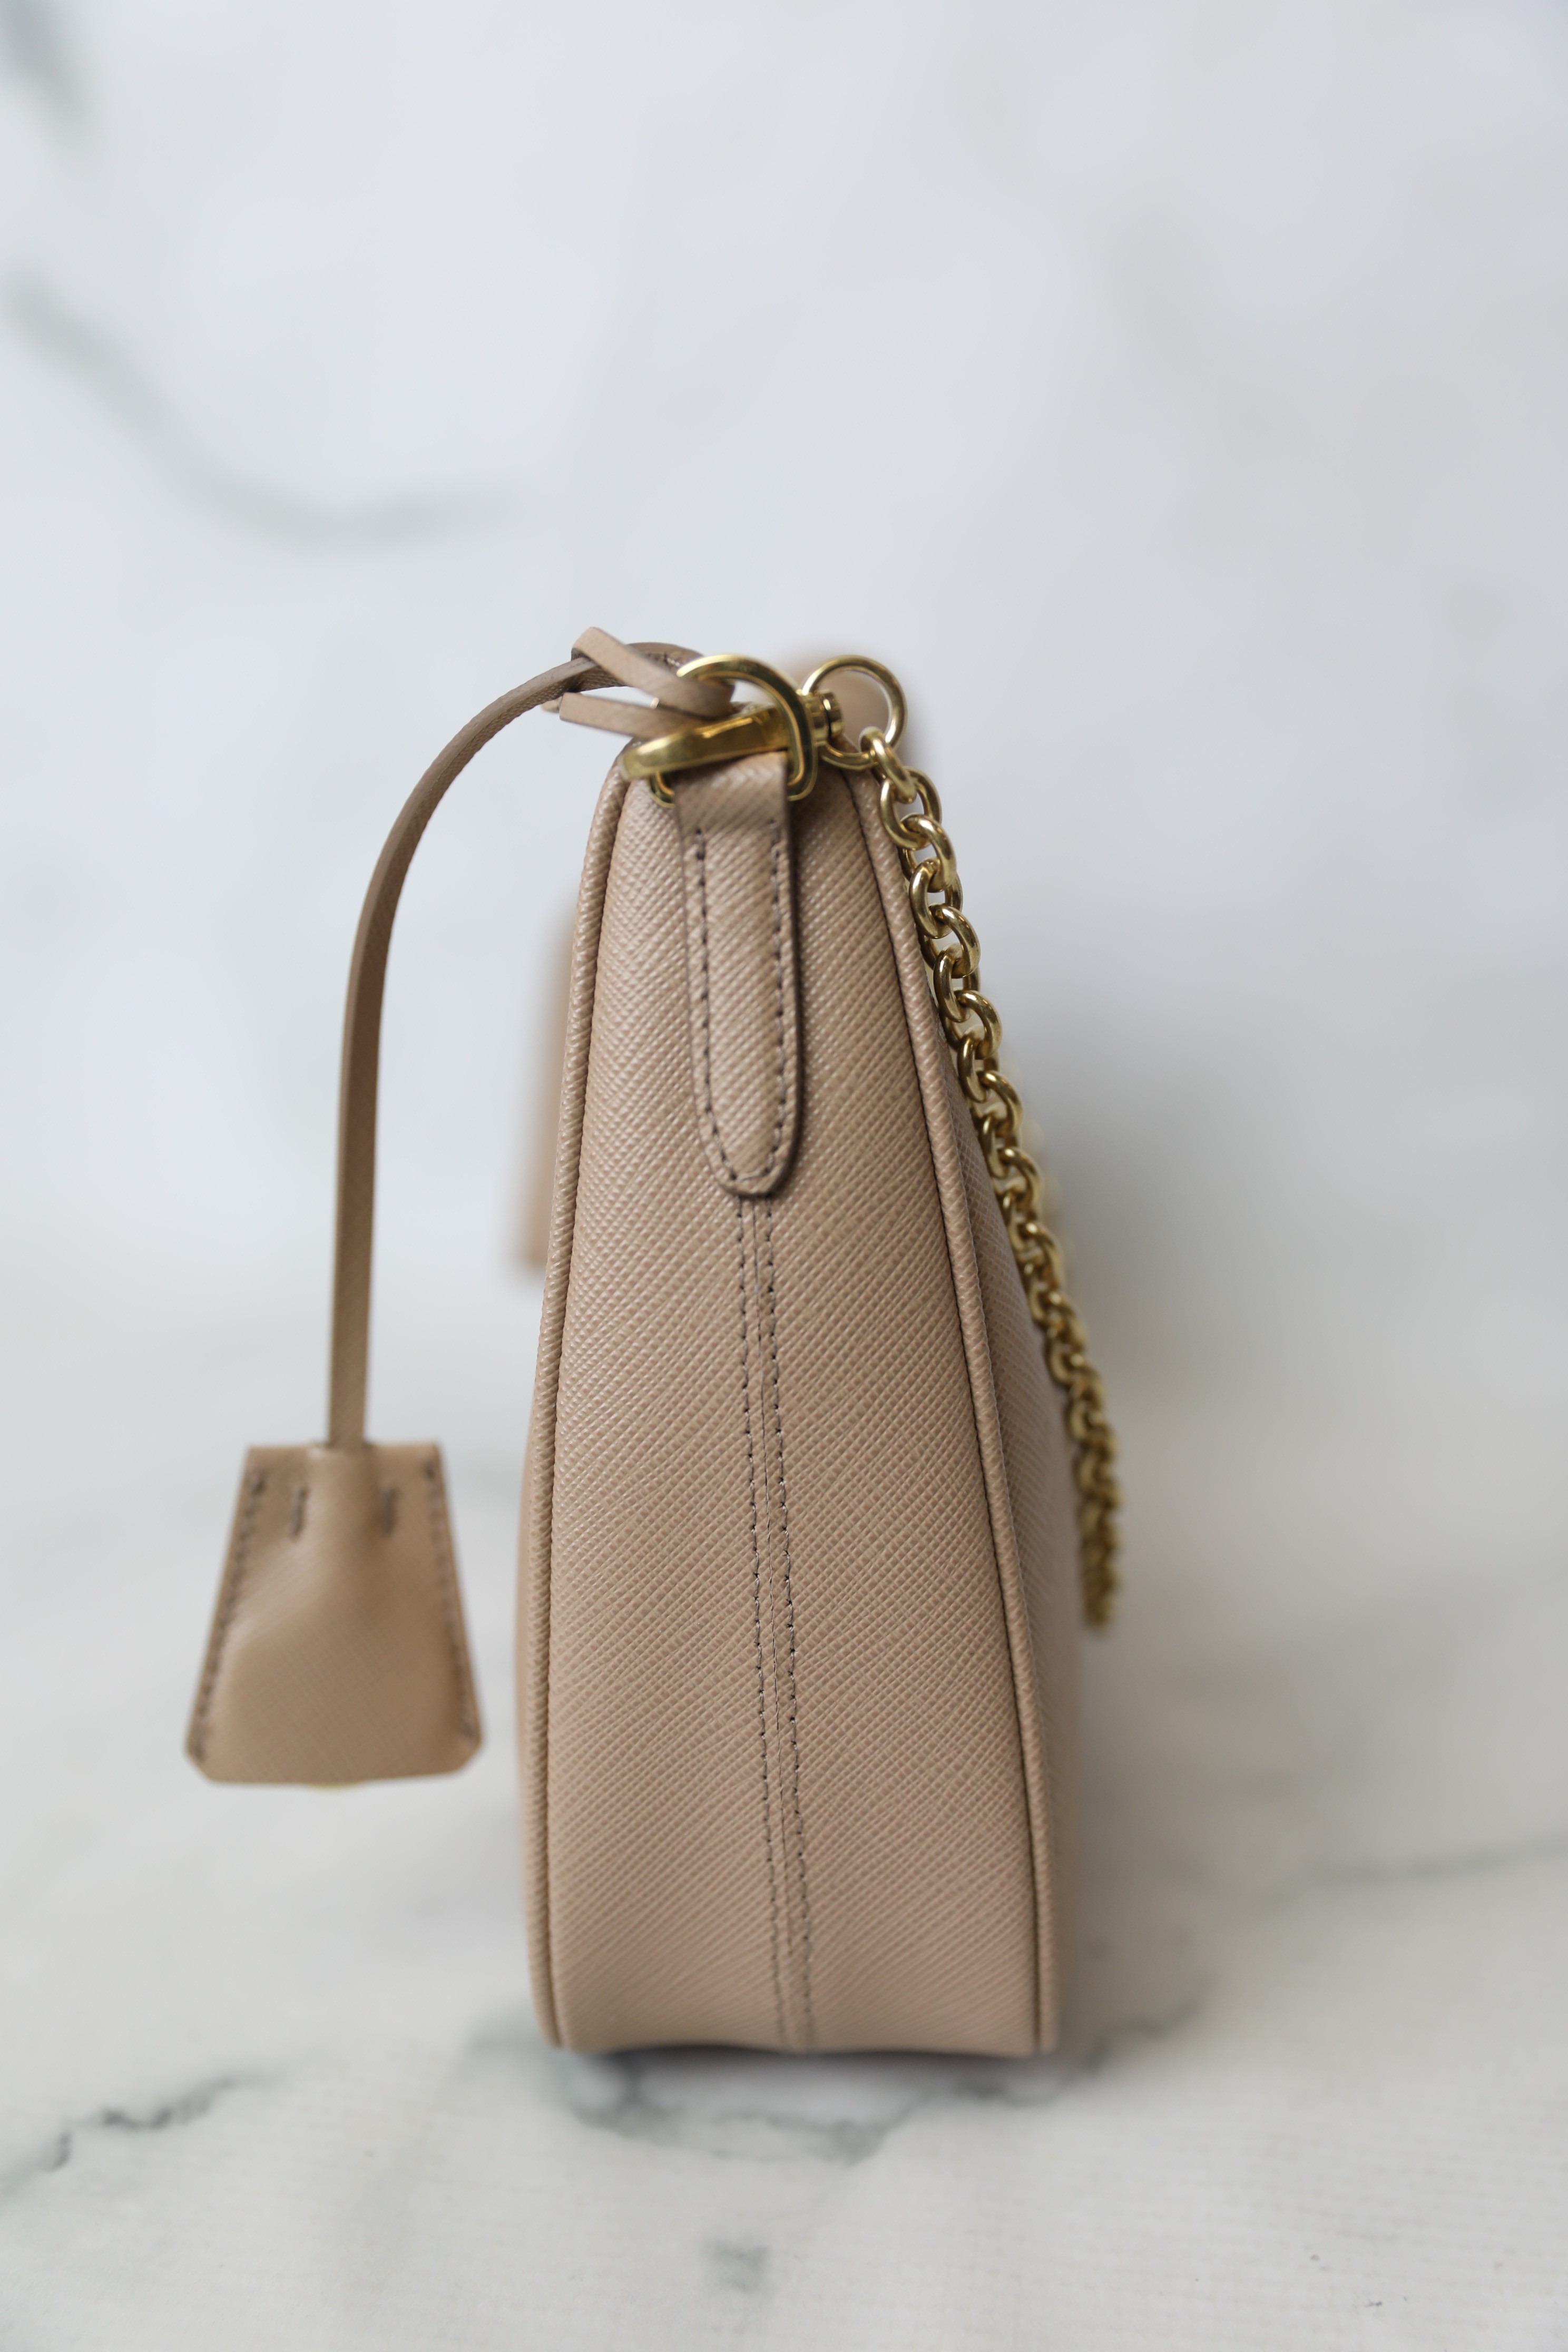 💐 Beautiful Prada Saffiano Flap Bag Orchidea & Wallet Unboxing